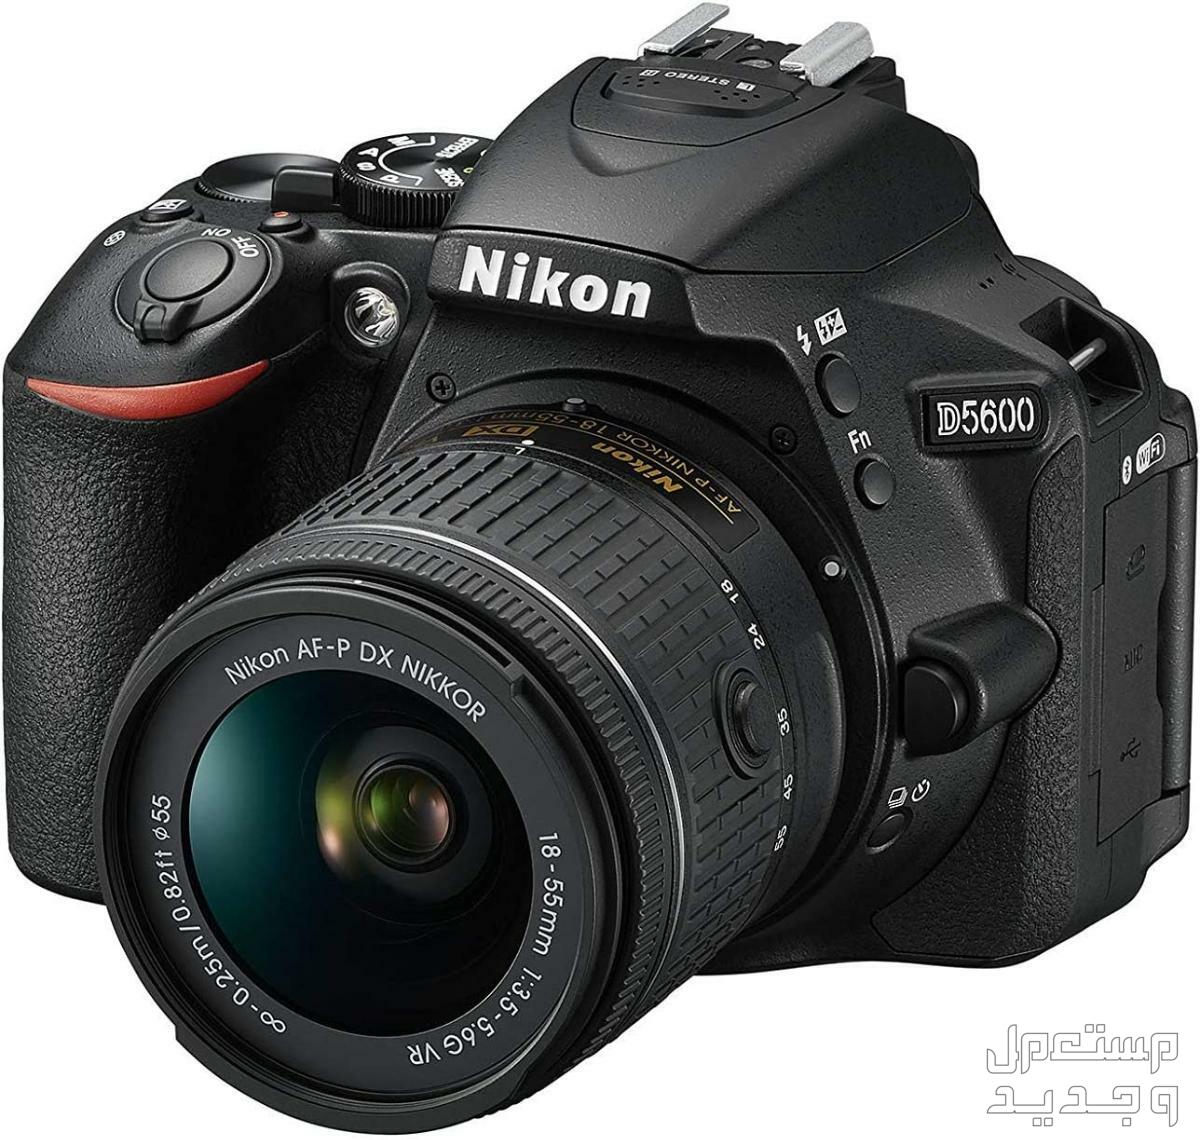 10 كاميرات تصوير ماركات عالمية بأسعار رخيصة في مصر كاميرا Nikon D5600